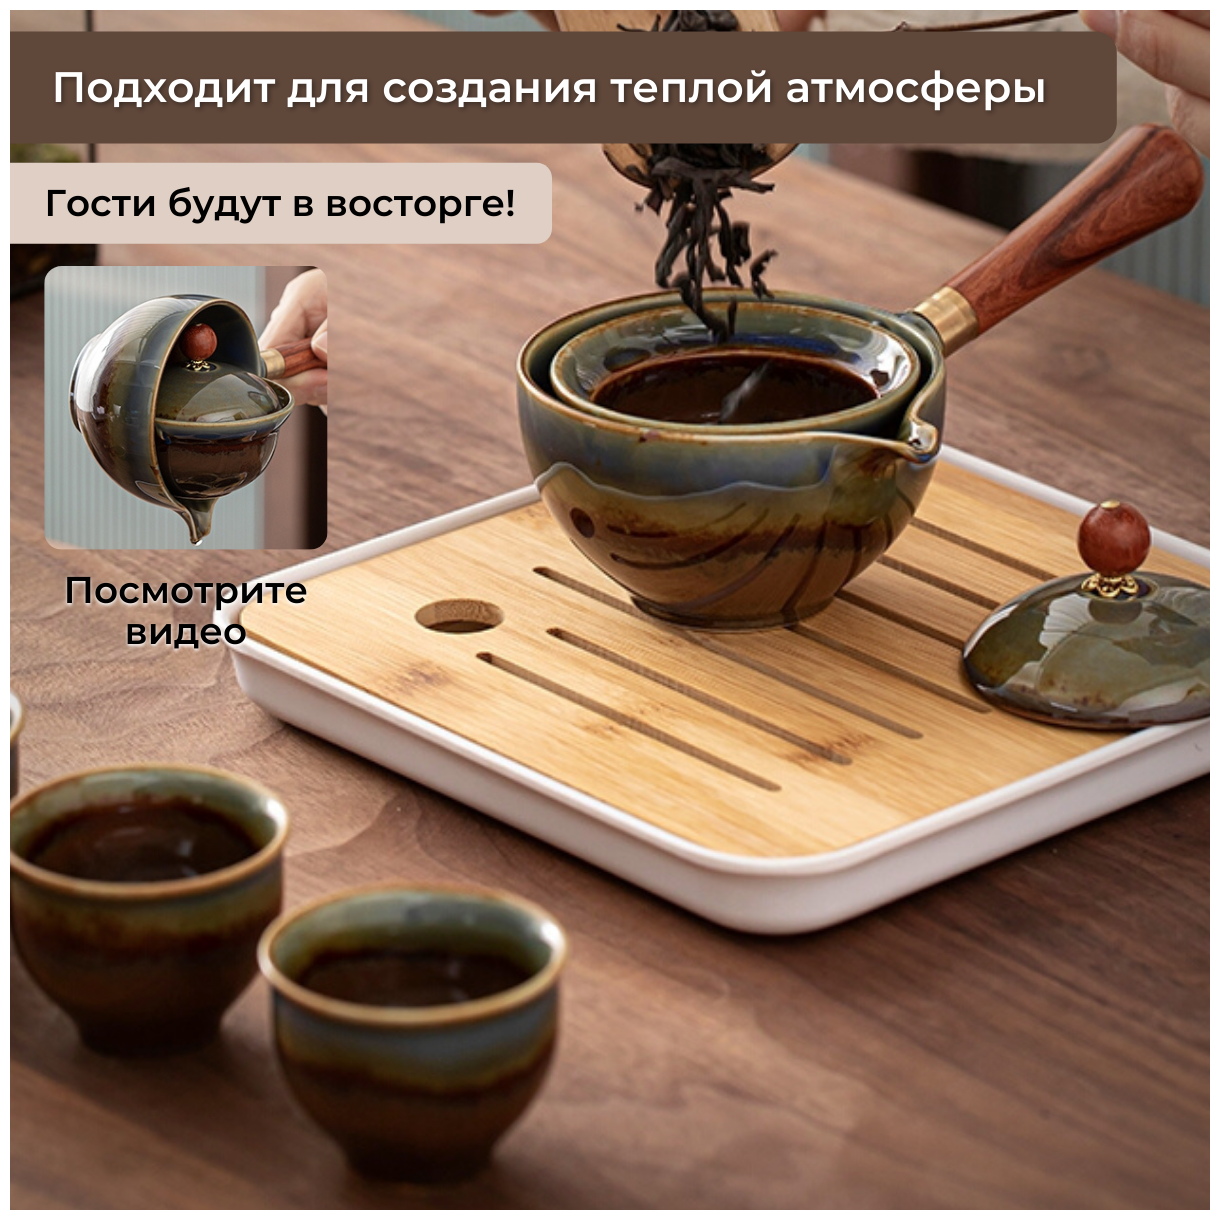 Набор для чайной церемонии, Сервиз для чайной китайской церемонии с чайником, посуда для чая, фарфоровый, на 4 персоны